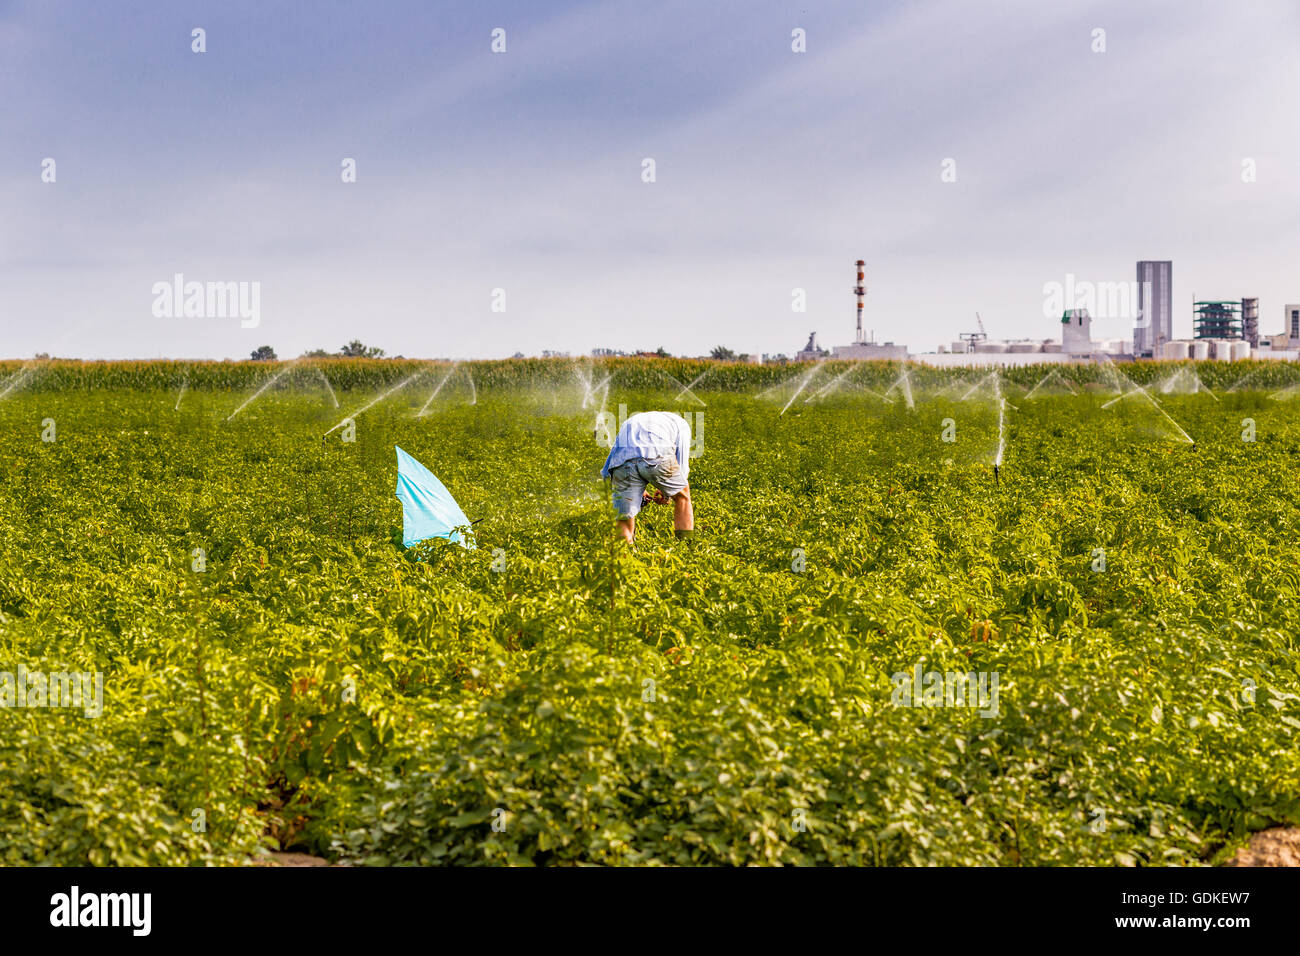 Landwirt mit einem blauen Schirm nicht nass werden, während der Inspektion die Sprinkler im grünen gepflegten Feld laufen, eine Plantage von Sonnenblumen und chemische Industrie sind auf Hintergrund Stockfoto